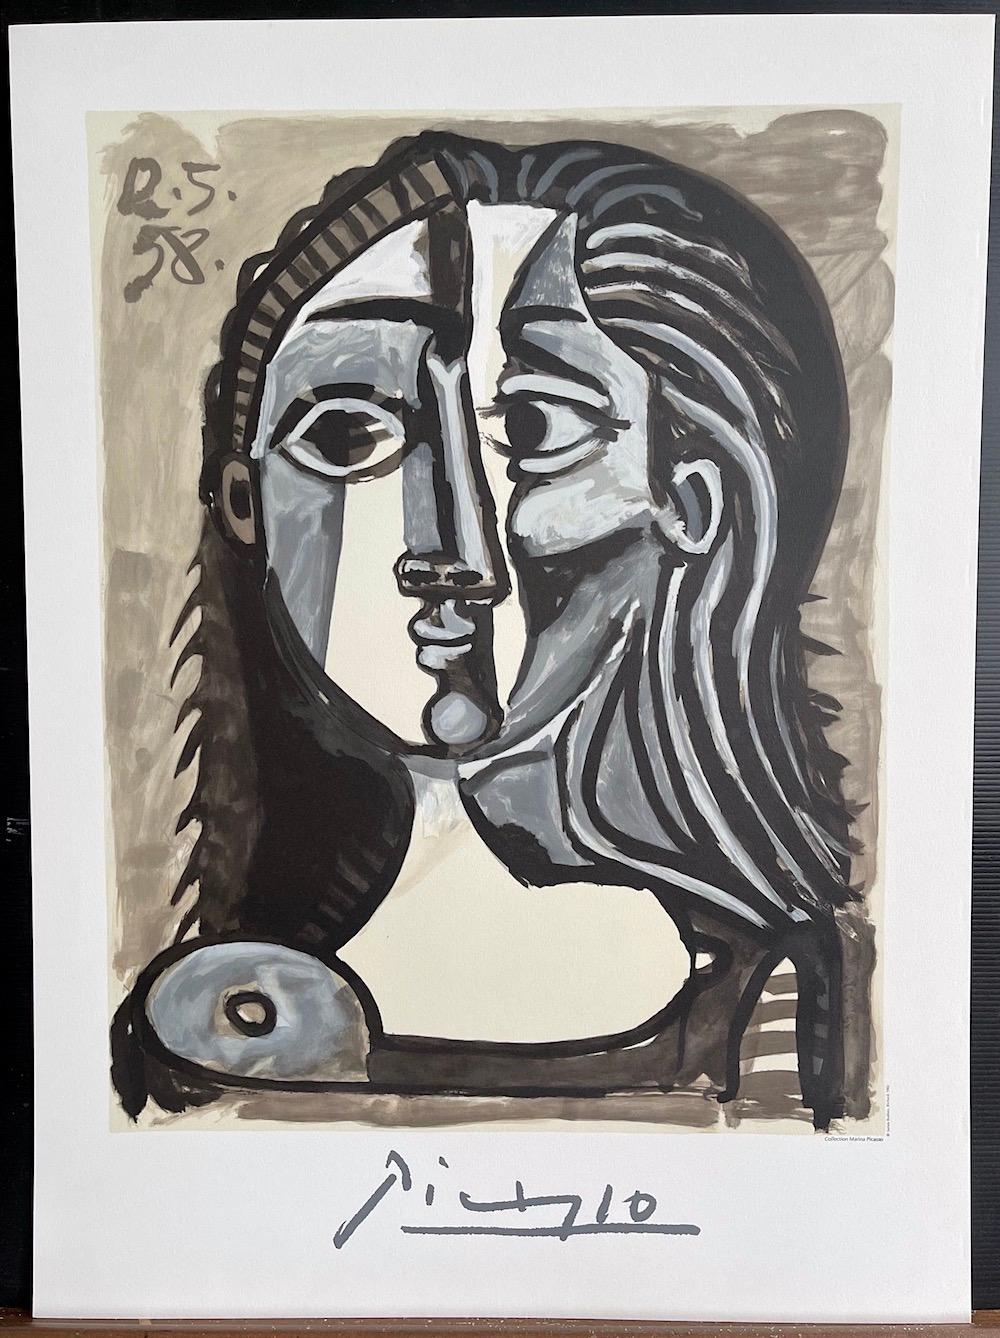 Artiste : Pablo Picasso, après, espagnol (1881 - 1973)
Titre : Tete de Femme 
Année de l'œuvre d'art originale : 1958
Médium : Lithographie sur papier Coventry, 100% sans acide
Édition de 1000, non numérotée, signature imprimée approuvée par la